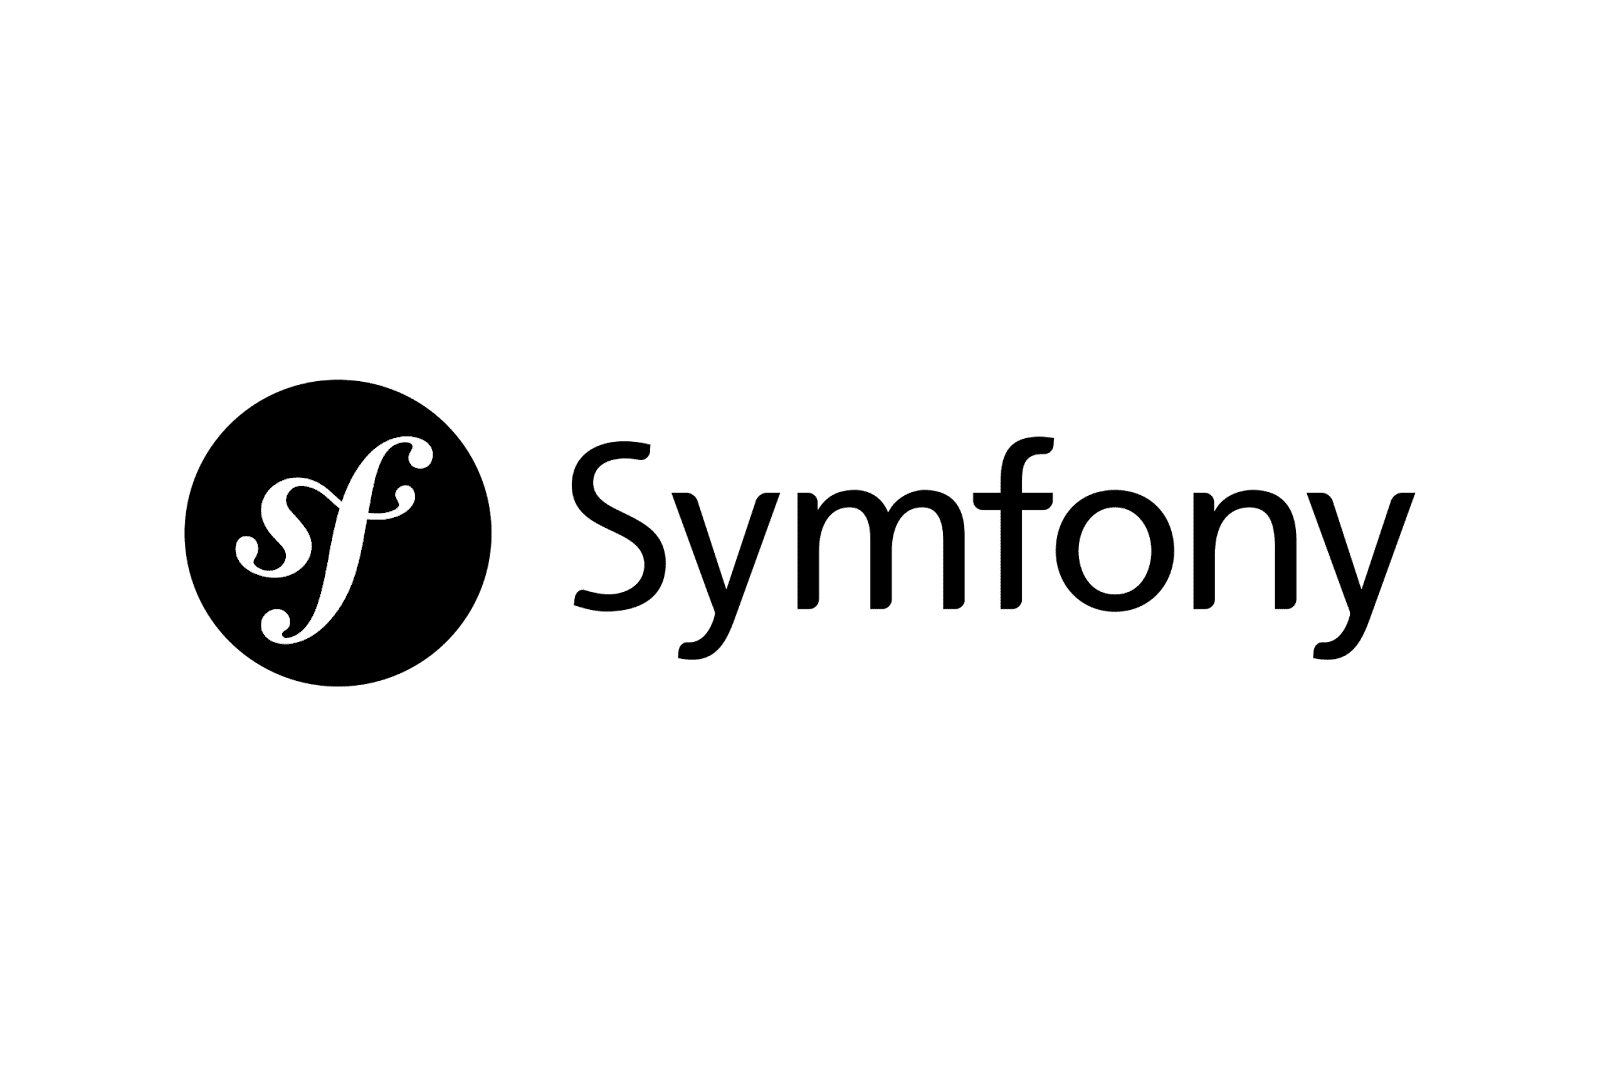 Das Symfony-Logo mit dem Wort in Schwarz und den Initialen "sf" in Weiß auf einem schwarzen Kreis.